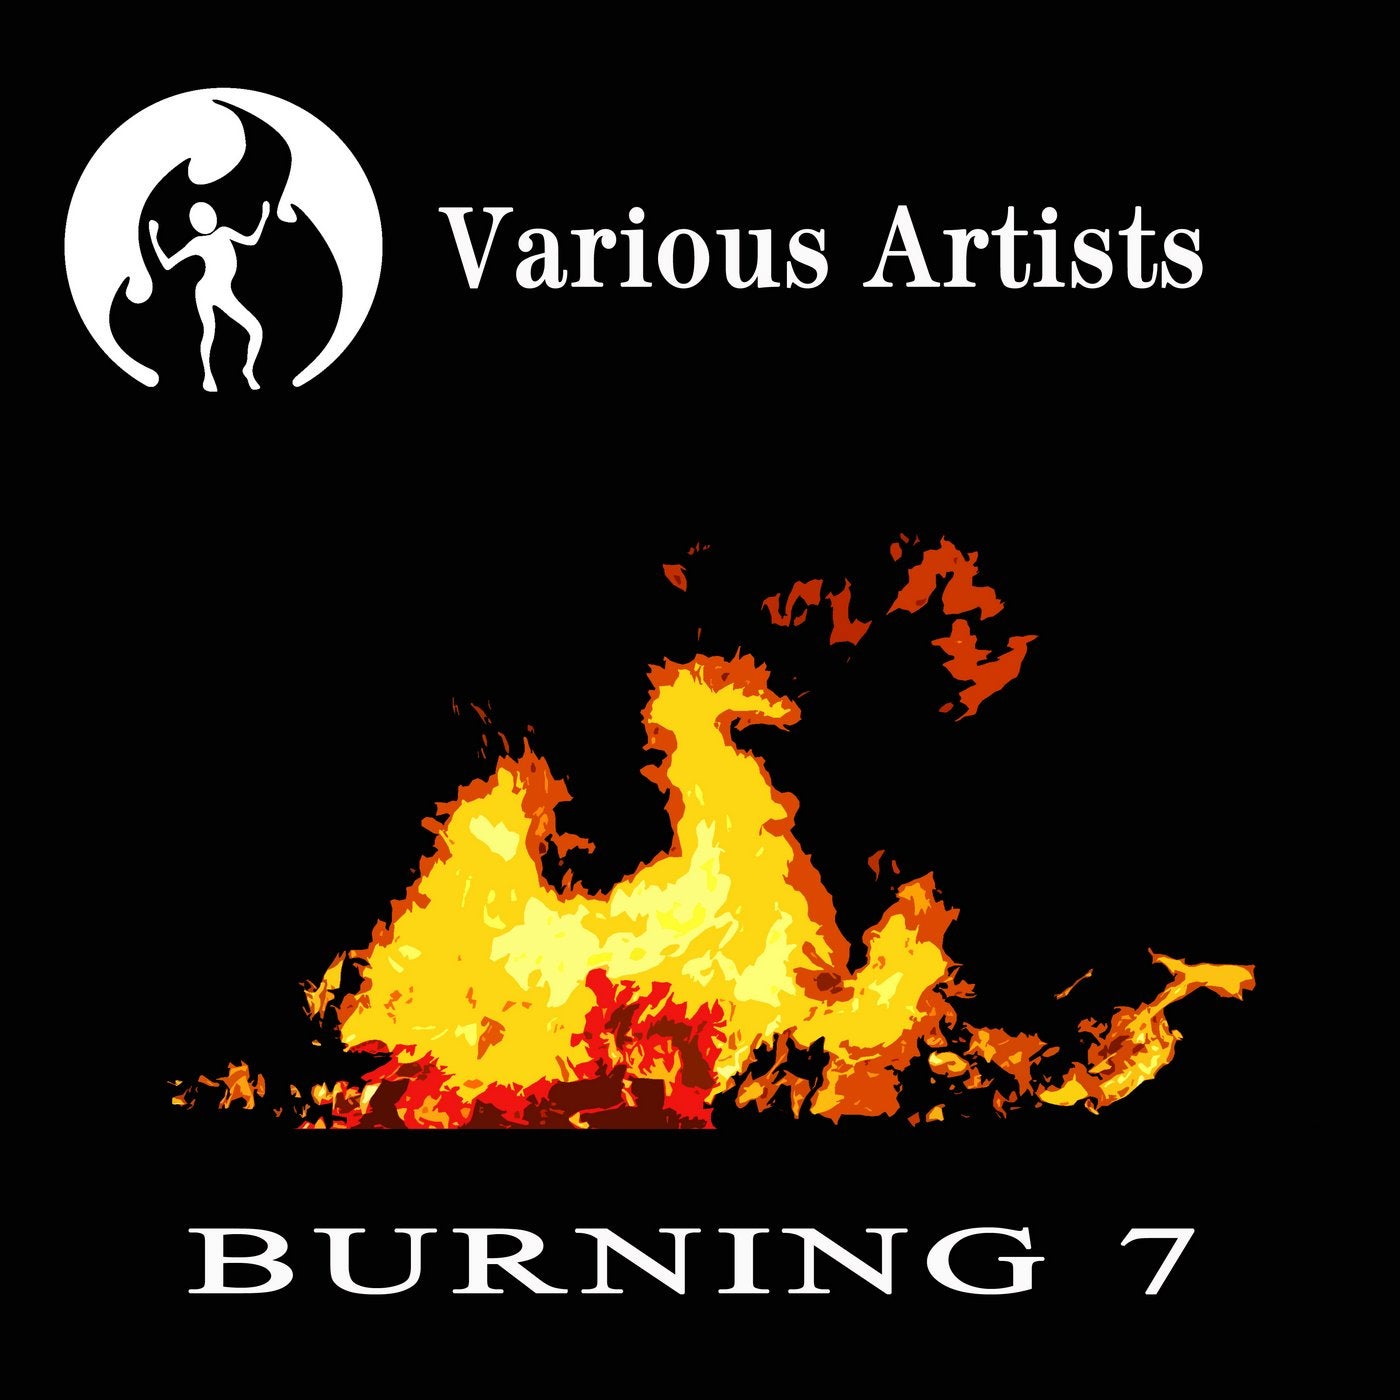 Burning 7